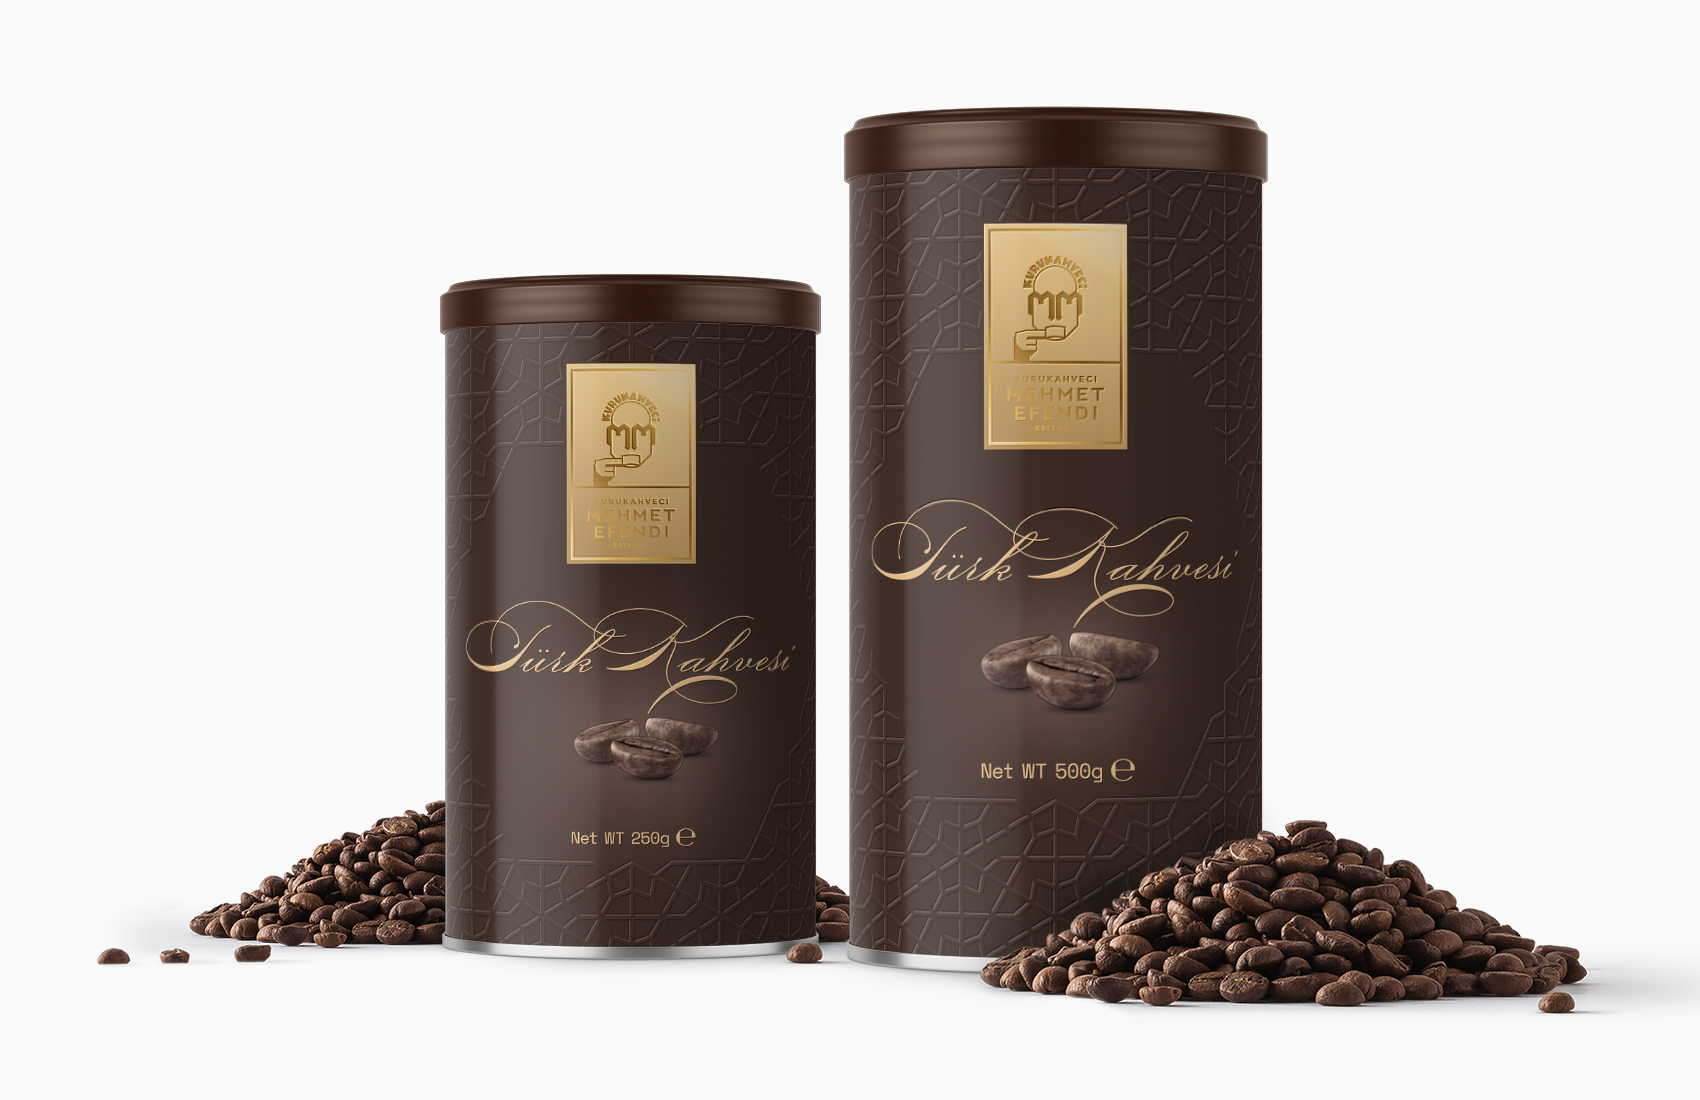 emretelli_kurukahvecimehmetefendi_turkish-coffee_packaging_1700